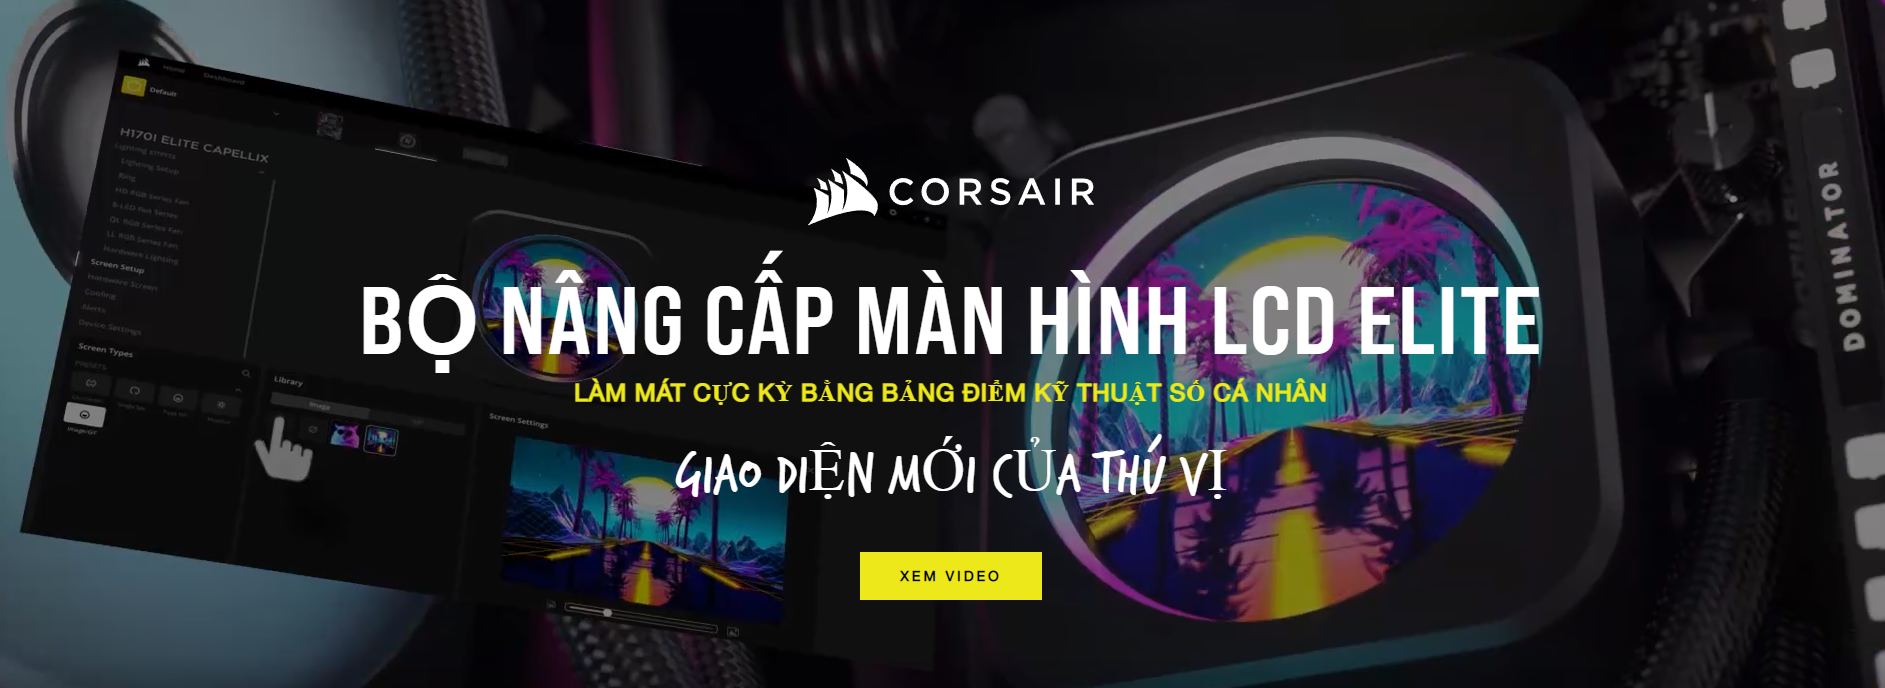 Corsair 1080P 2K 4K 5K HD wallpapers free download  Wallpaper Flare